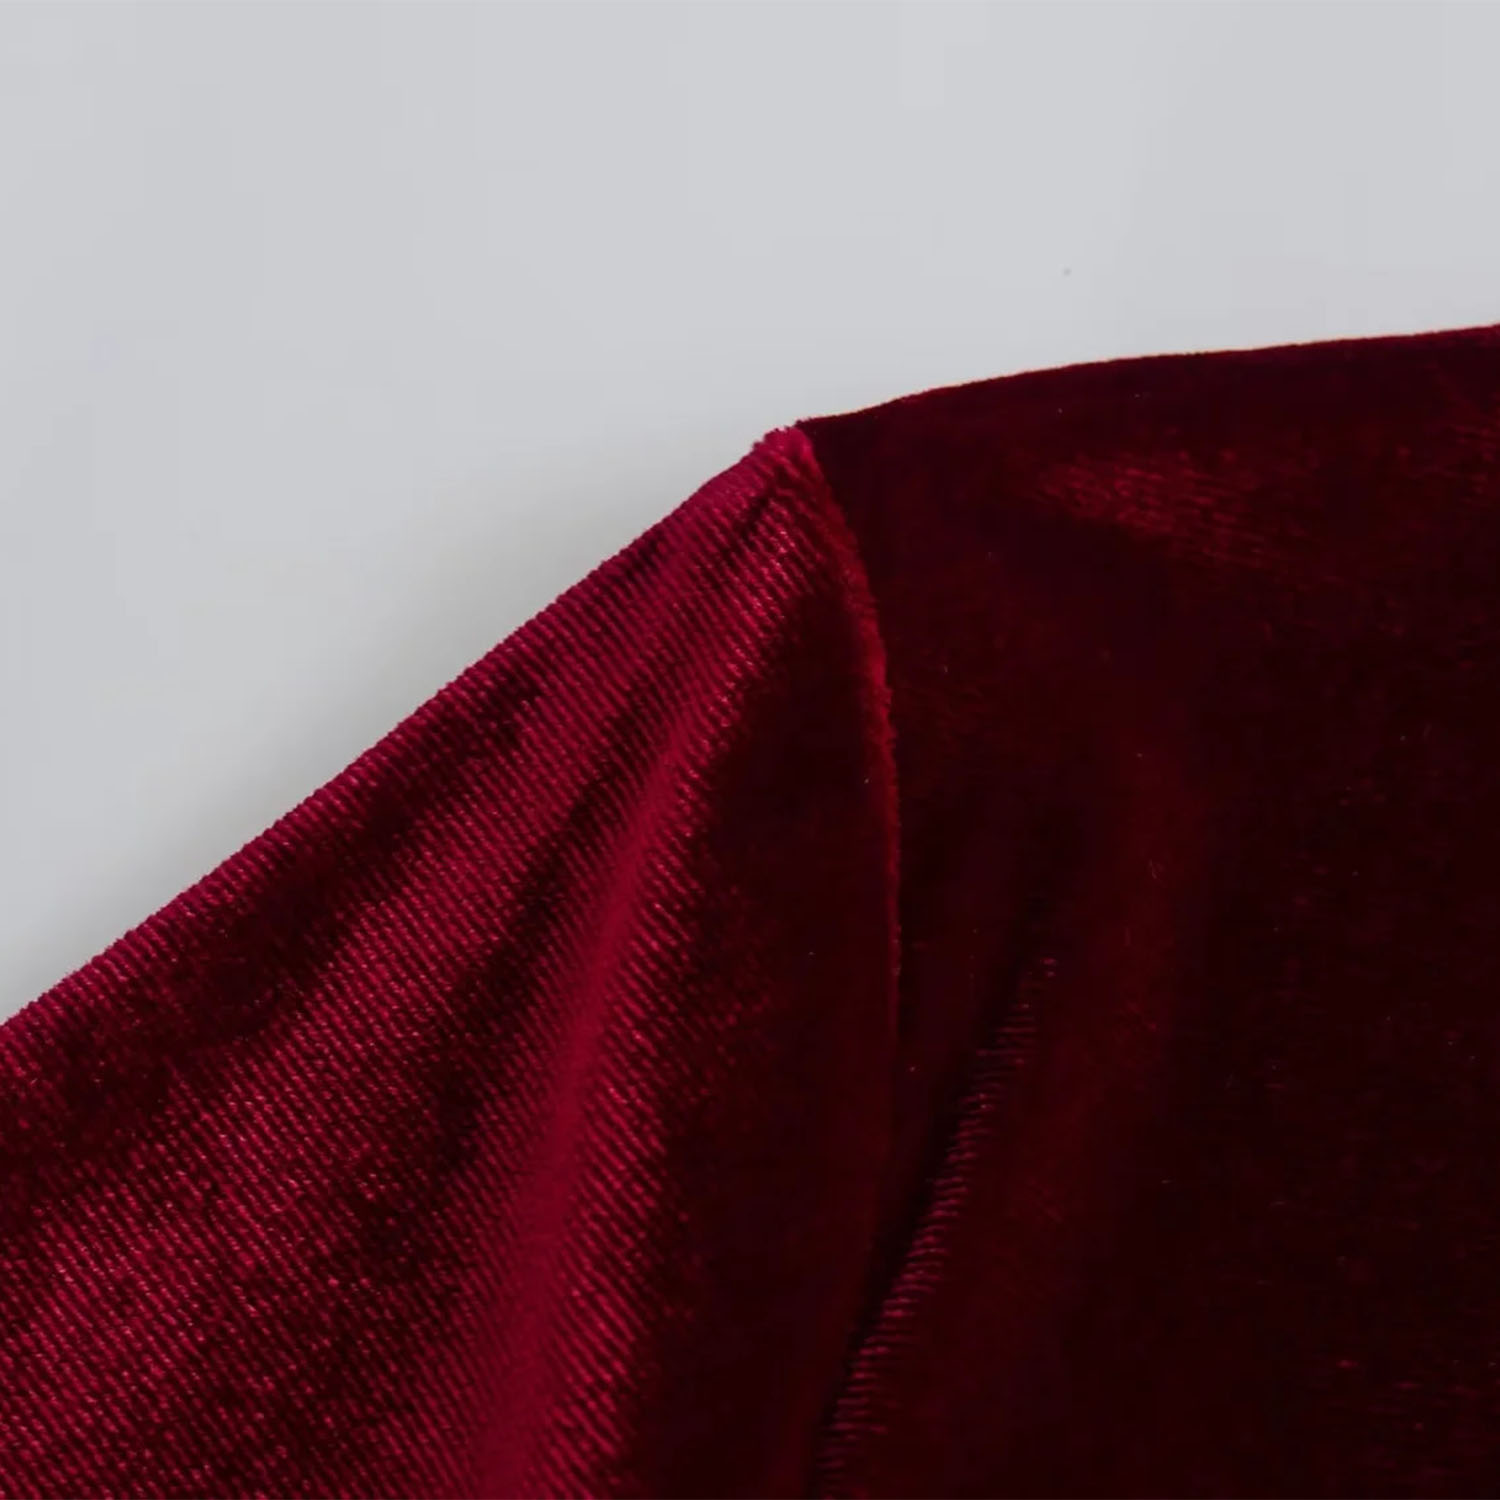 Fashion Wine Red Velvet V-neck Long-sleeved Dress,Prom Dresses